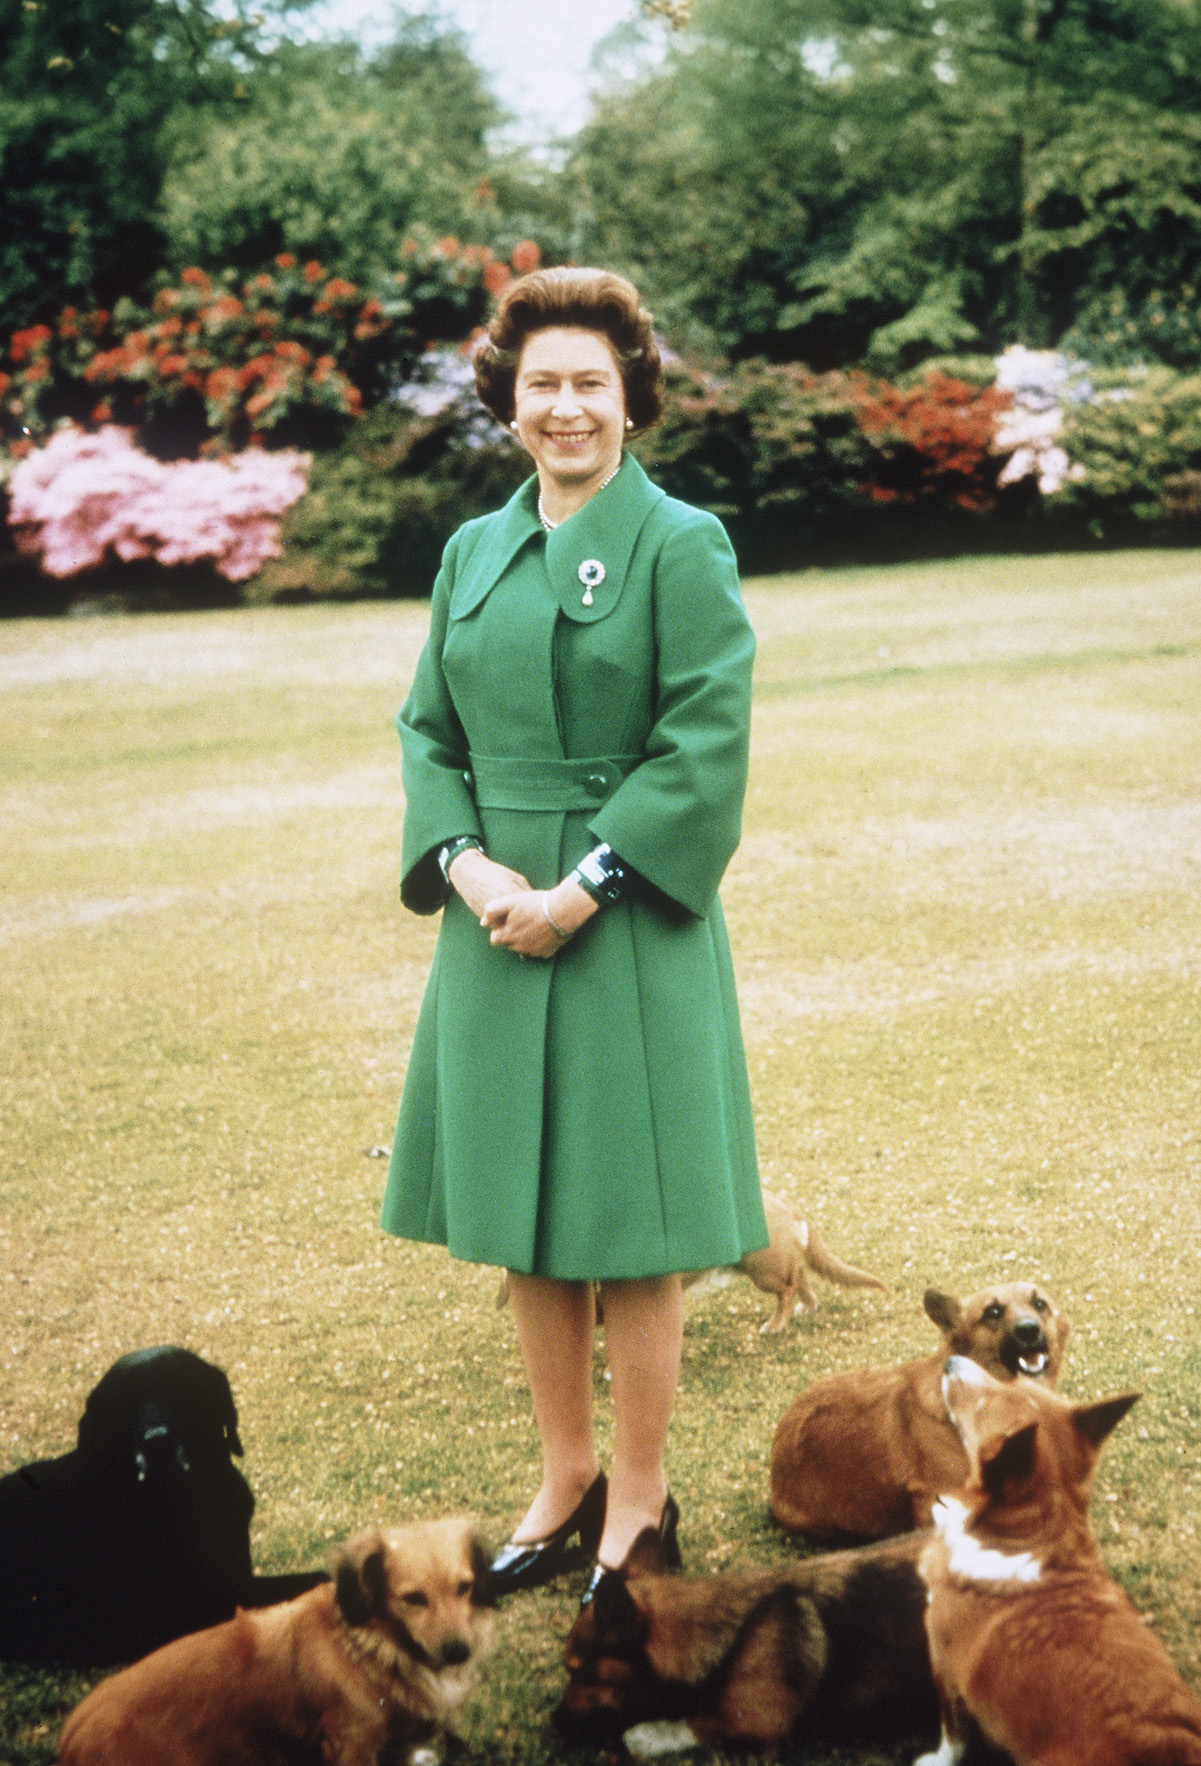 Queen Elizabeth II at Sandringham with her corgis